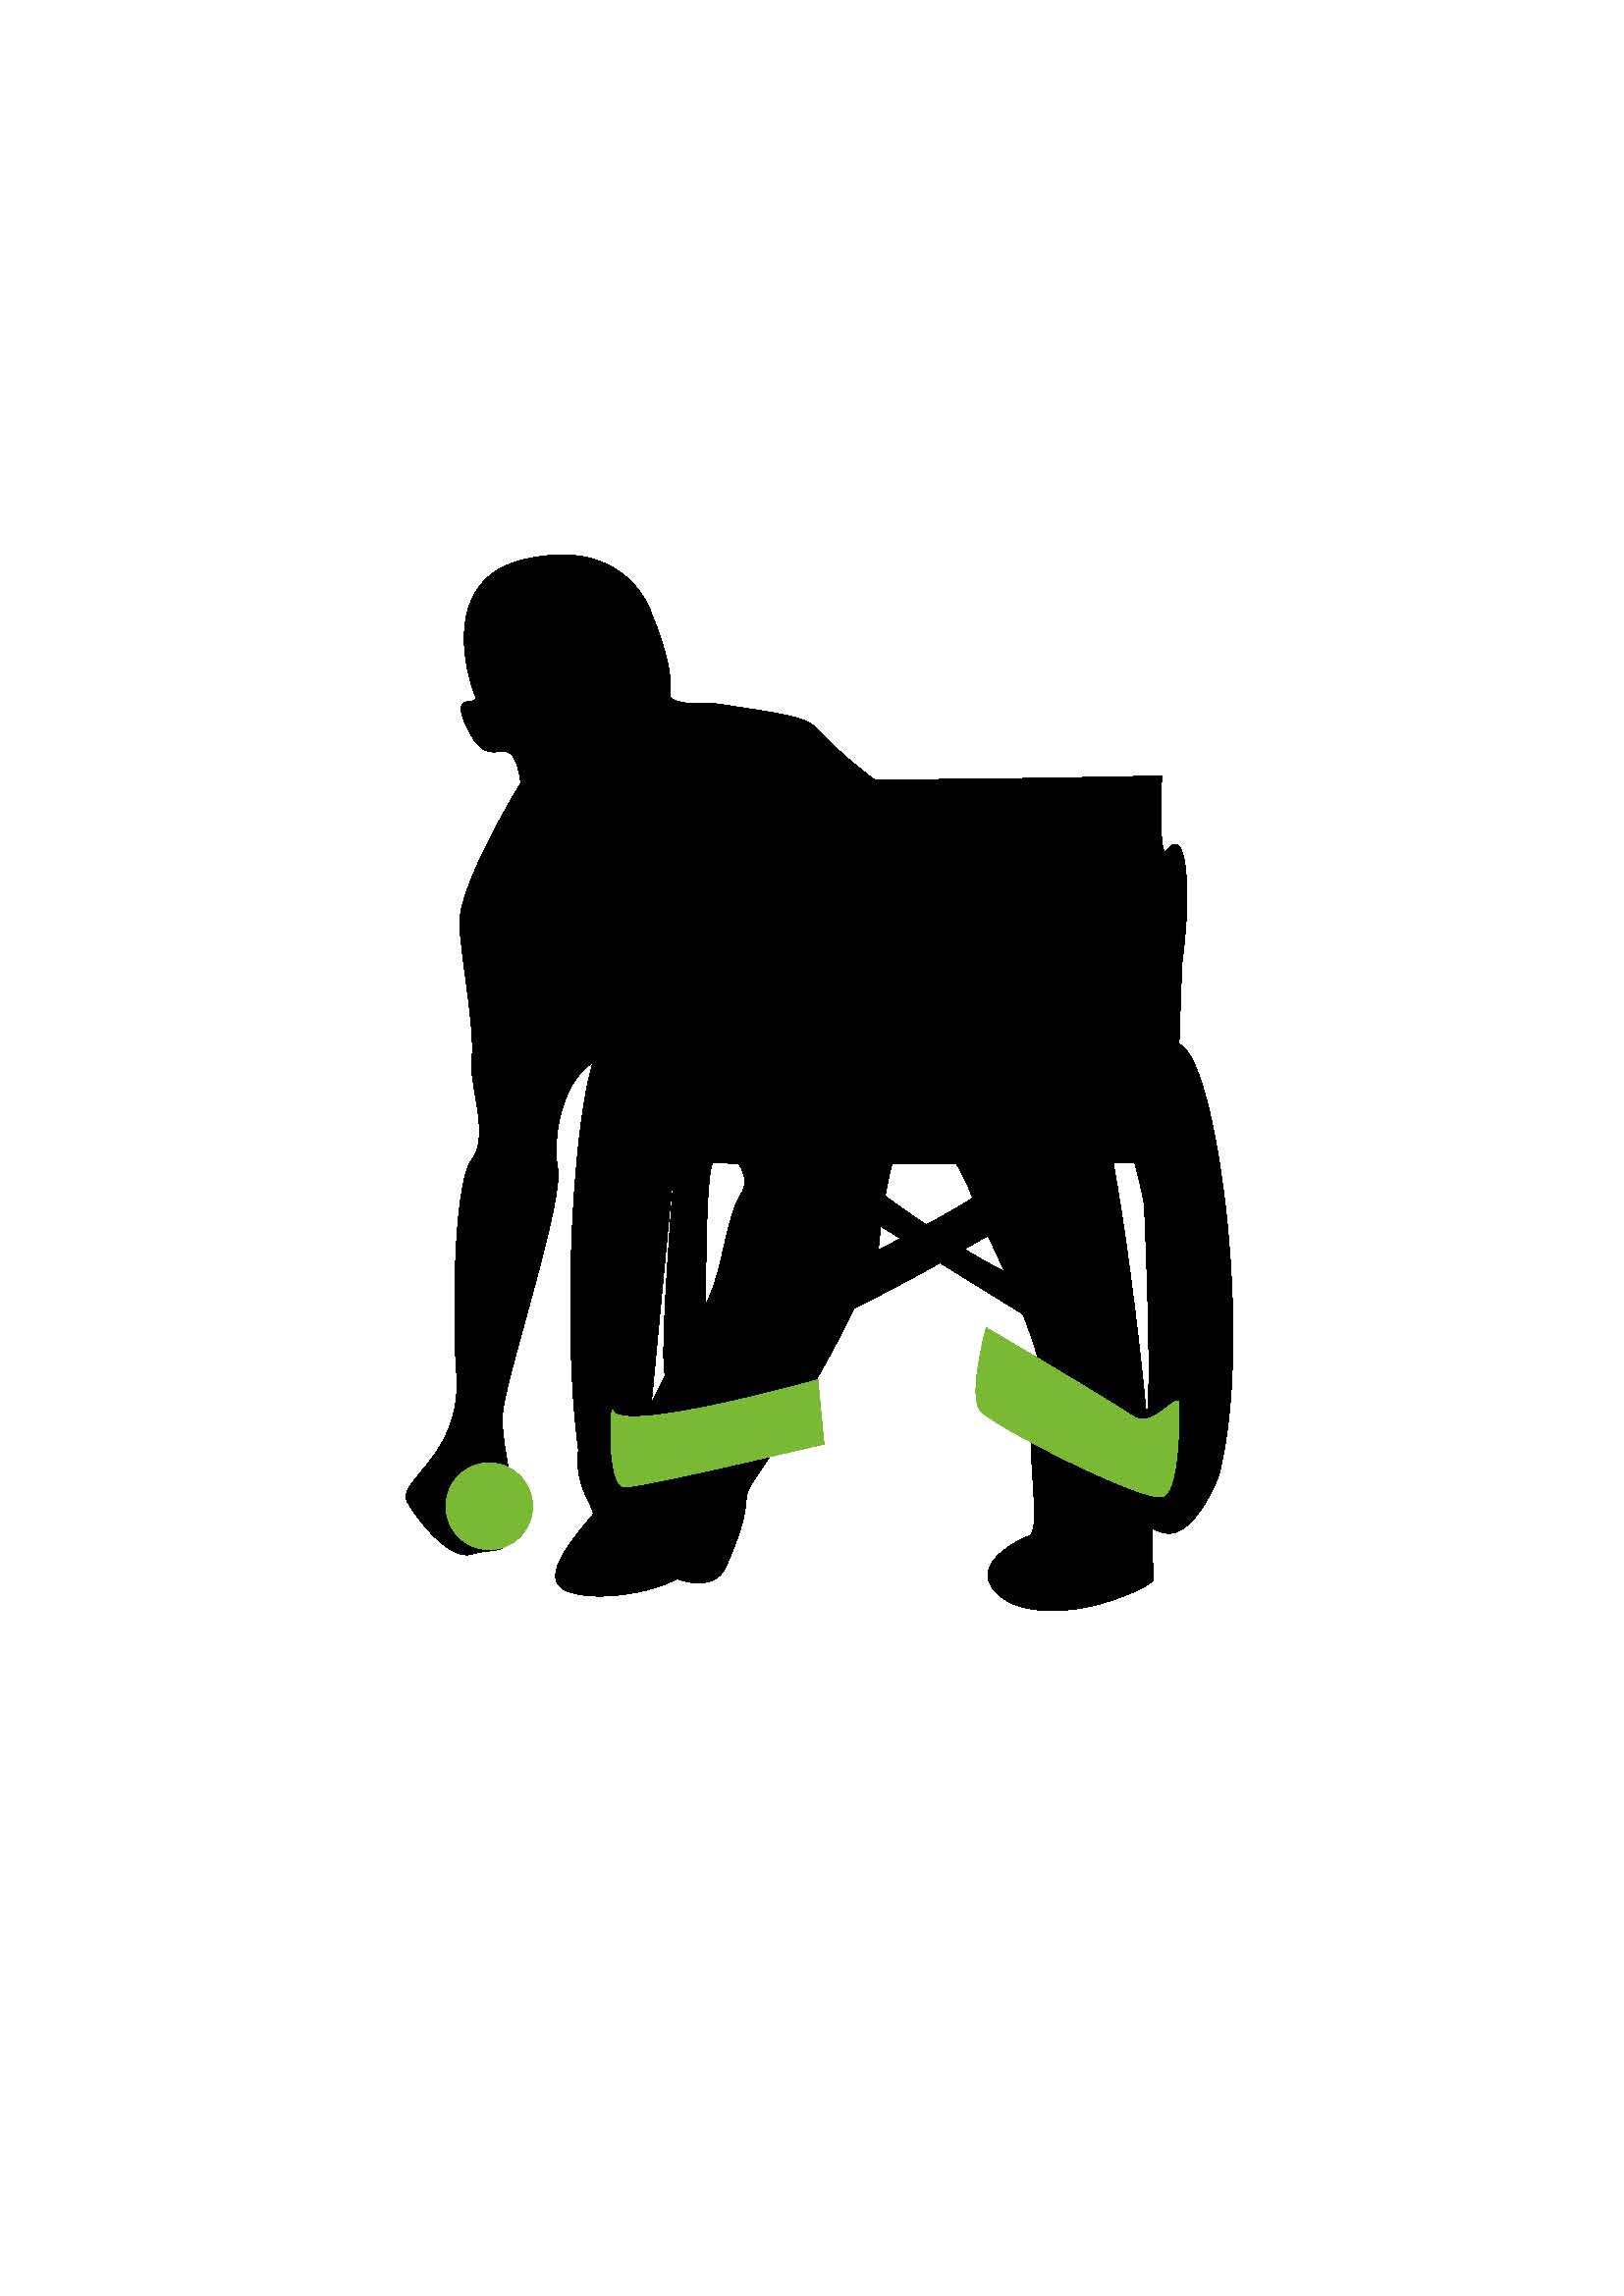 Illustrasjon av person i rullestol som spiller boccia.